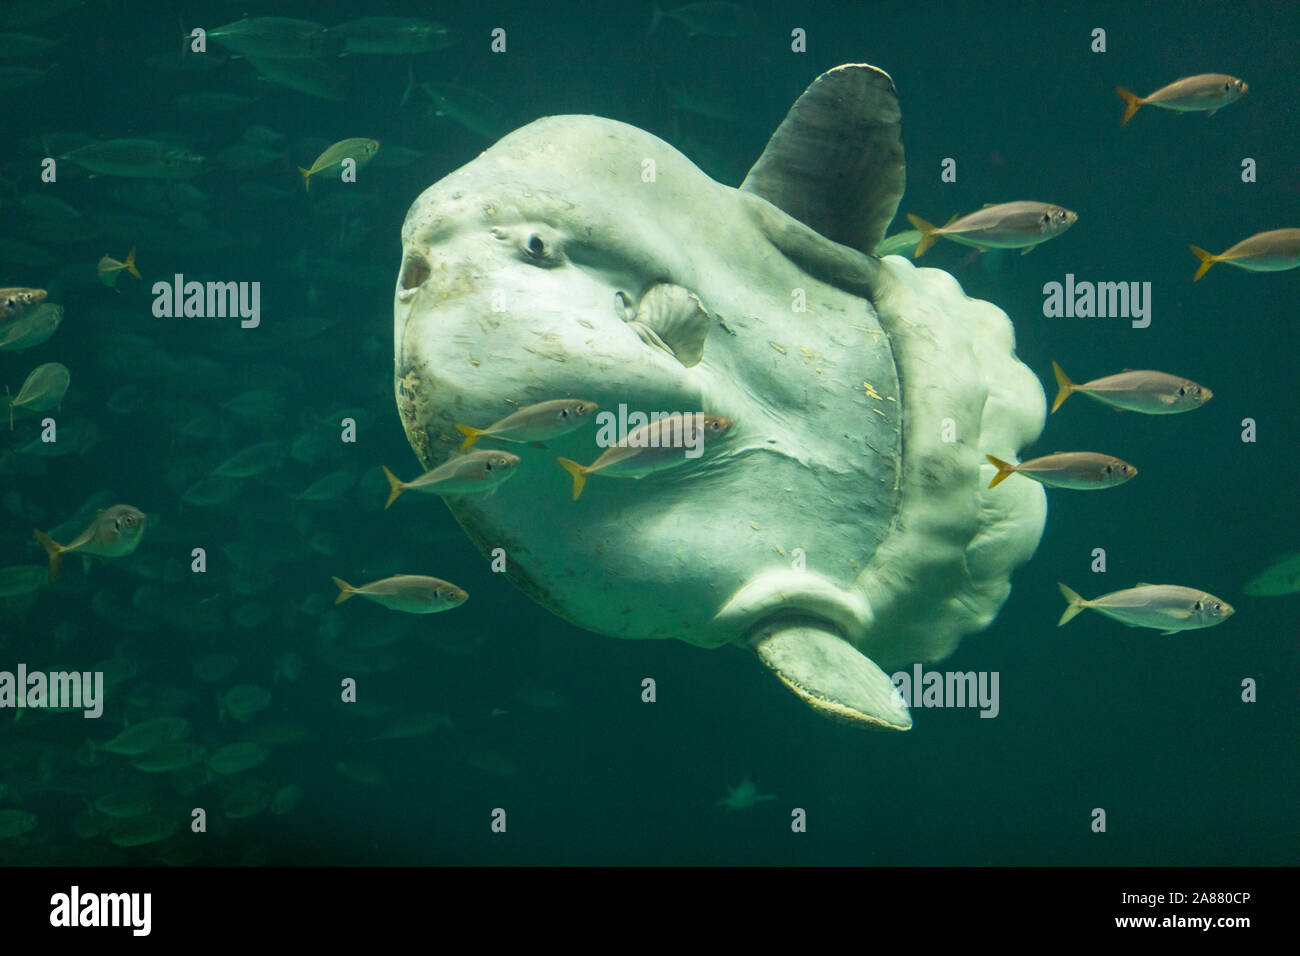 Mondfisch, Mond-Fisch, Klumpfisch, Mola mola, sunfish, ocean sunfish, Klumpfisk, comune di mola, La môle, la poisson-lune Foto Stock